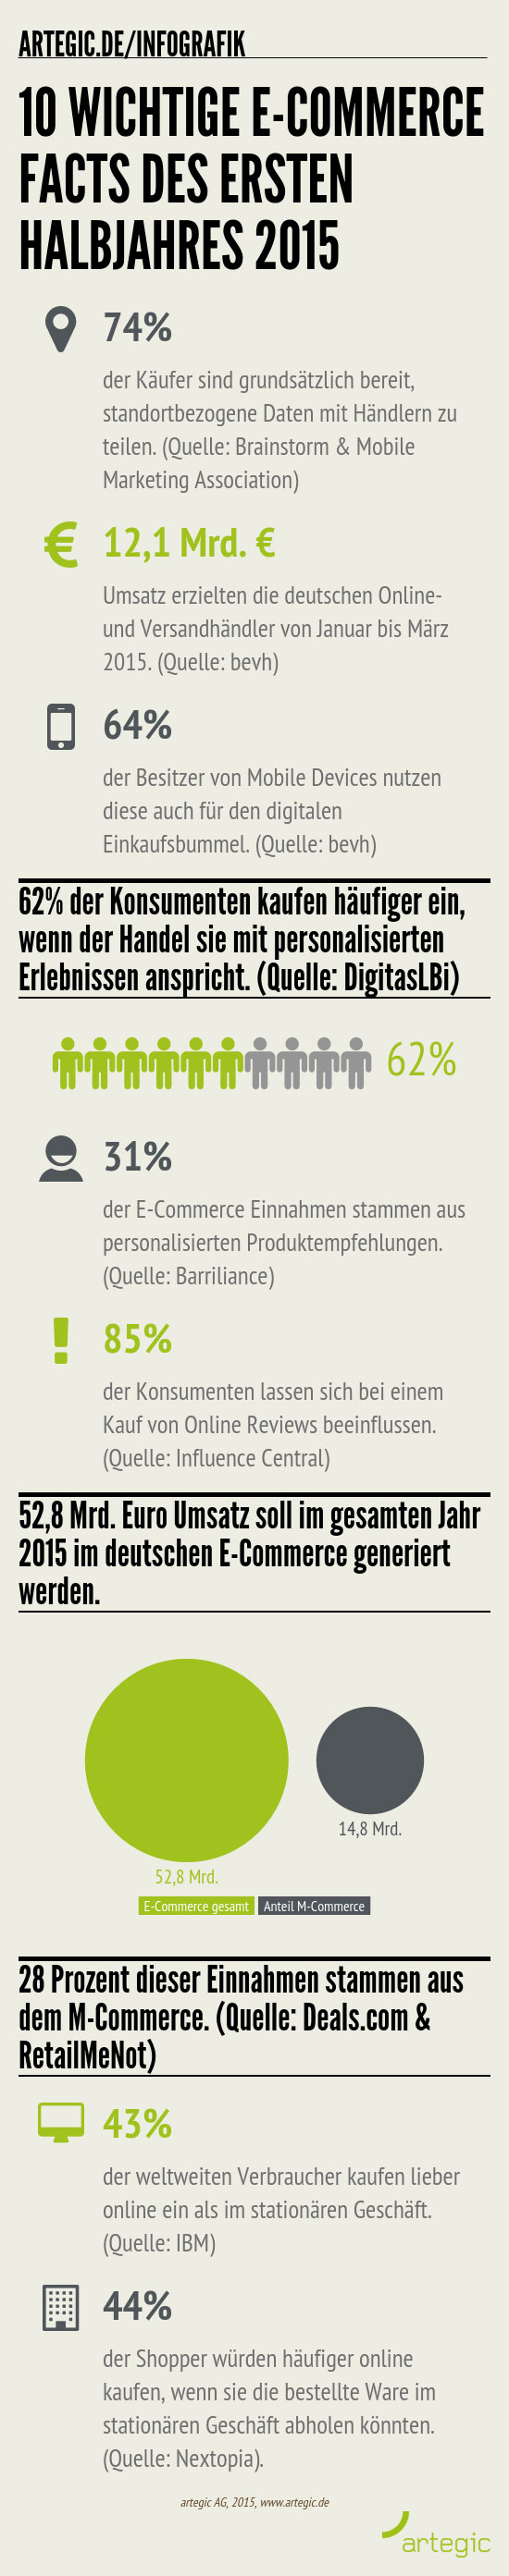 Infografik E-Commerce-Fakten